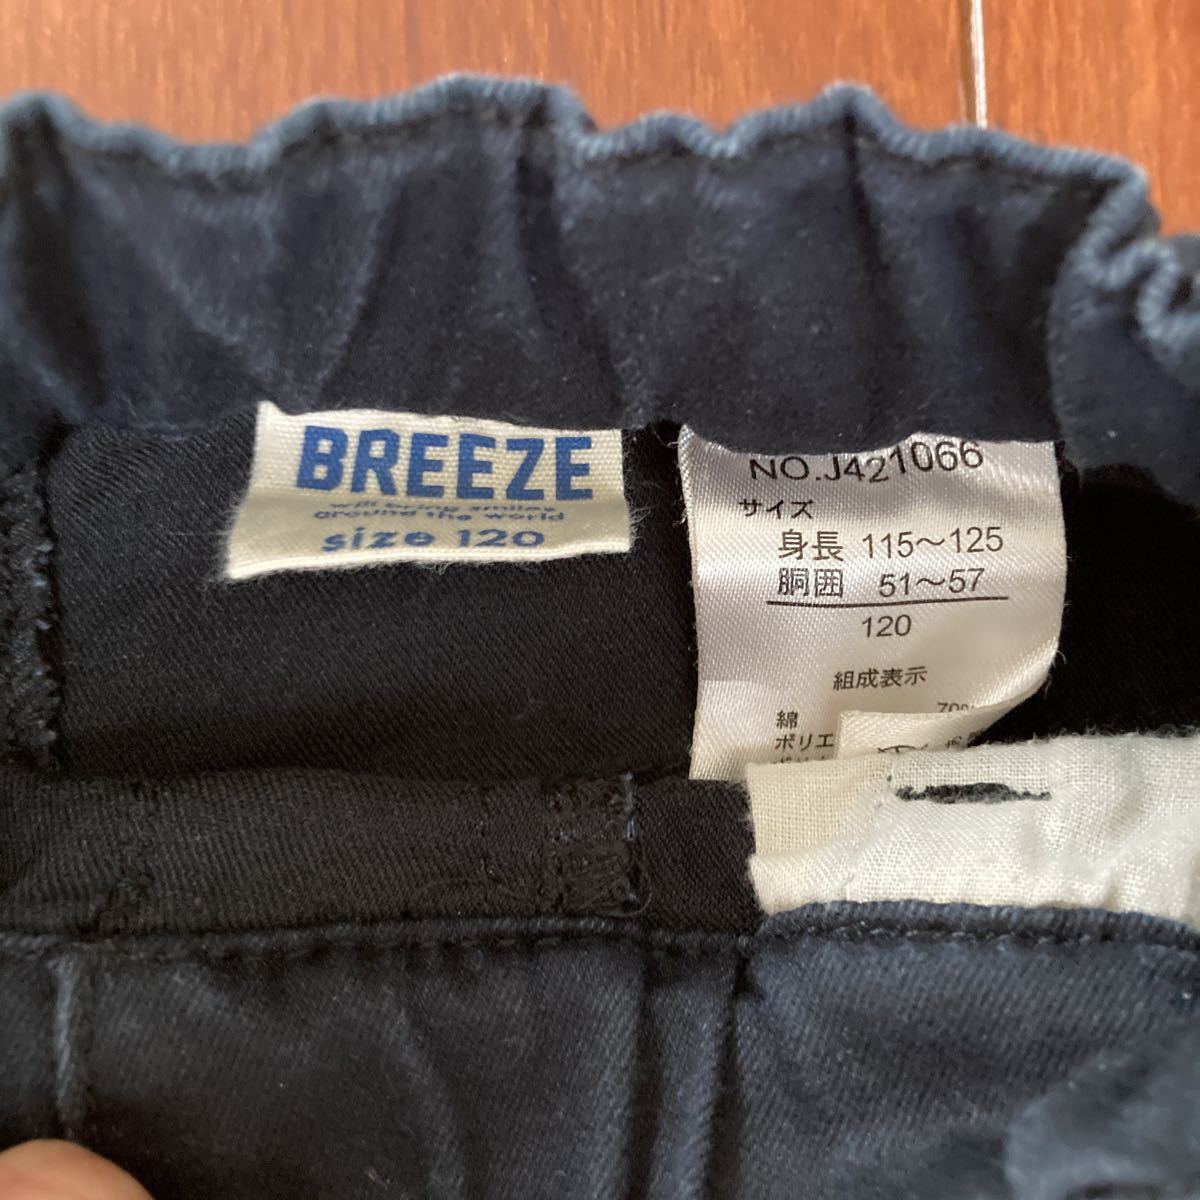 BREEZE・ブリーズ・ストレッチ・スキニーパンツ・男女兼用・ブラック系・120_画像3